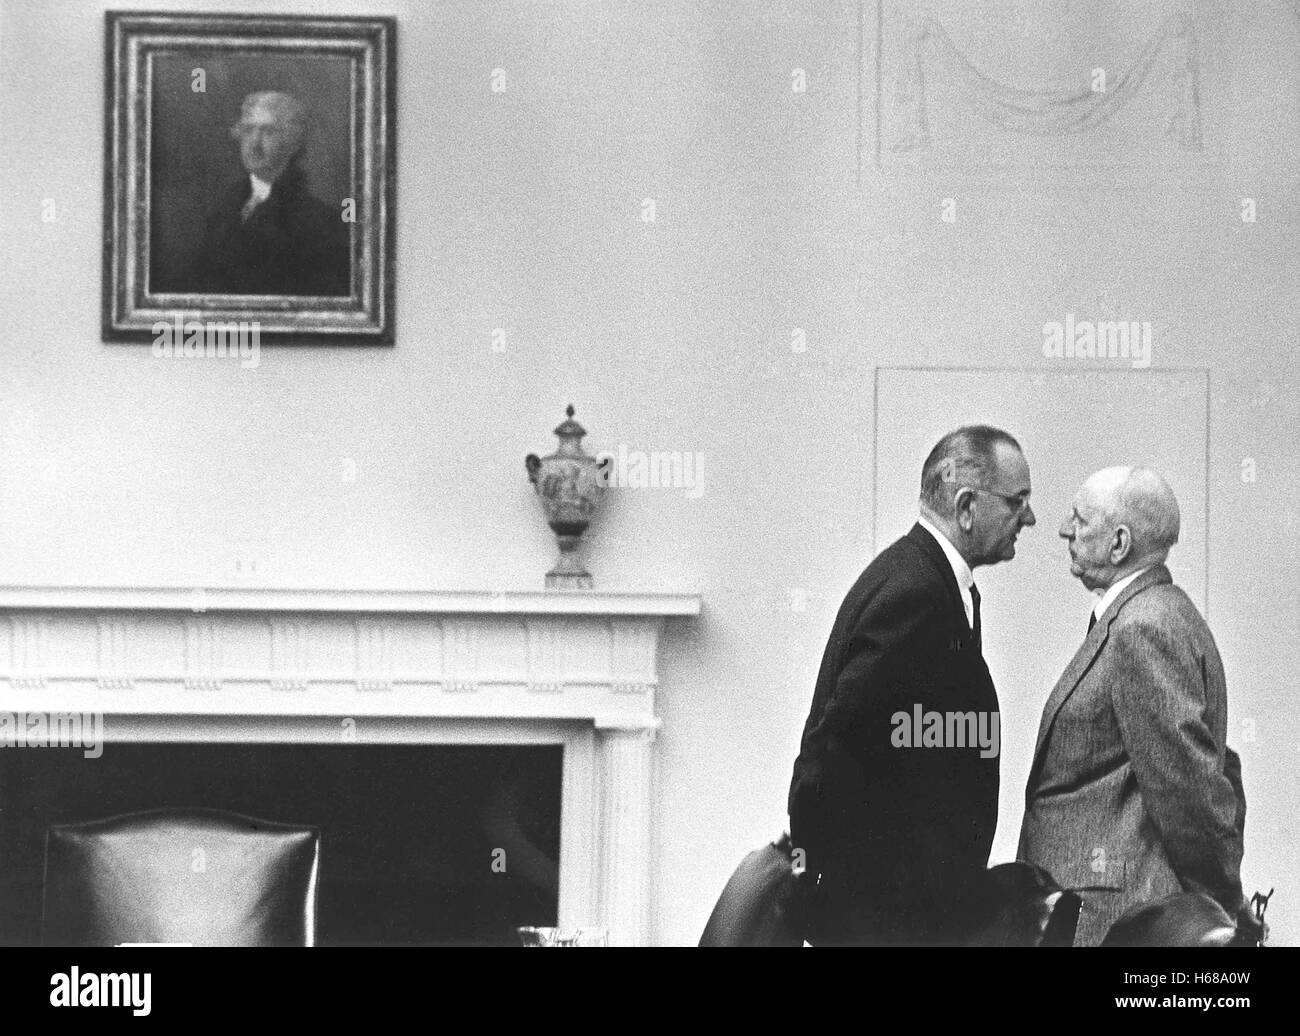 Präsident Lyndon b. Johnson mit Senator Richard Russell an das Weiße Haus, 7. Dezember 1963, Washington, DC. Weiße Haus Foto von Yoichi Okamoto (1915-1985).    Diese Archivierung Print ist verfügbar in folgenden Größen: 8' x 10' $15,95 w / versandkostenfrei 11' x 14' $23,95 w / versandkostenfrei 16' x 20' $59,95 w / versandkostenfrei 20' x 24' $99,95 w / versandkostenfrei * The American Photoarchive Wasserzeichen erscheint nicht auf dem Ausdruck. Stockfoto